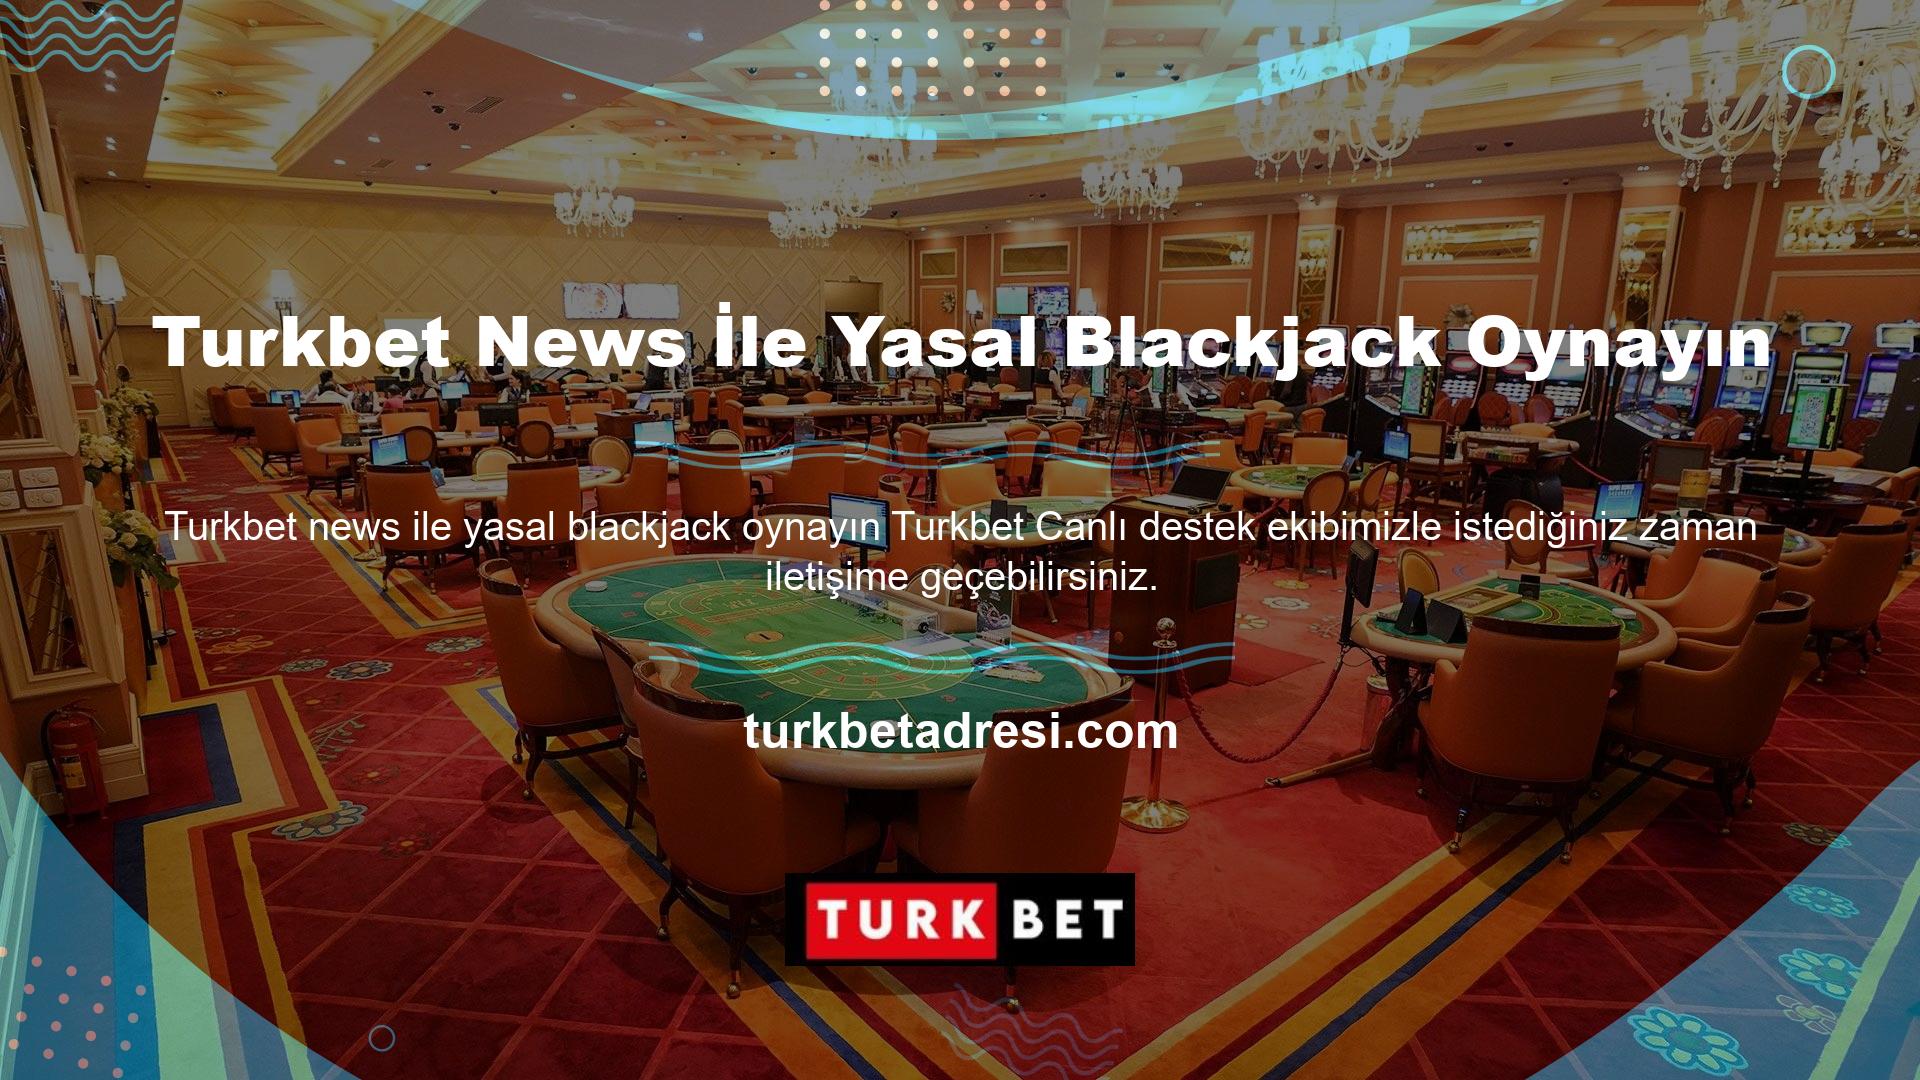 Ayrıca çevrimiçi Turkbet haberlerinin yer aldığı yasal blackjack yardım hattı hızlı yanıt alma konusunda çok faydalıdır